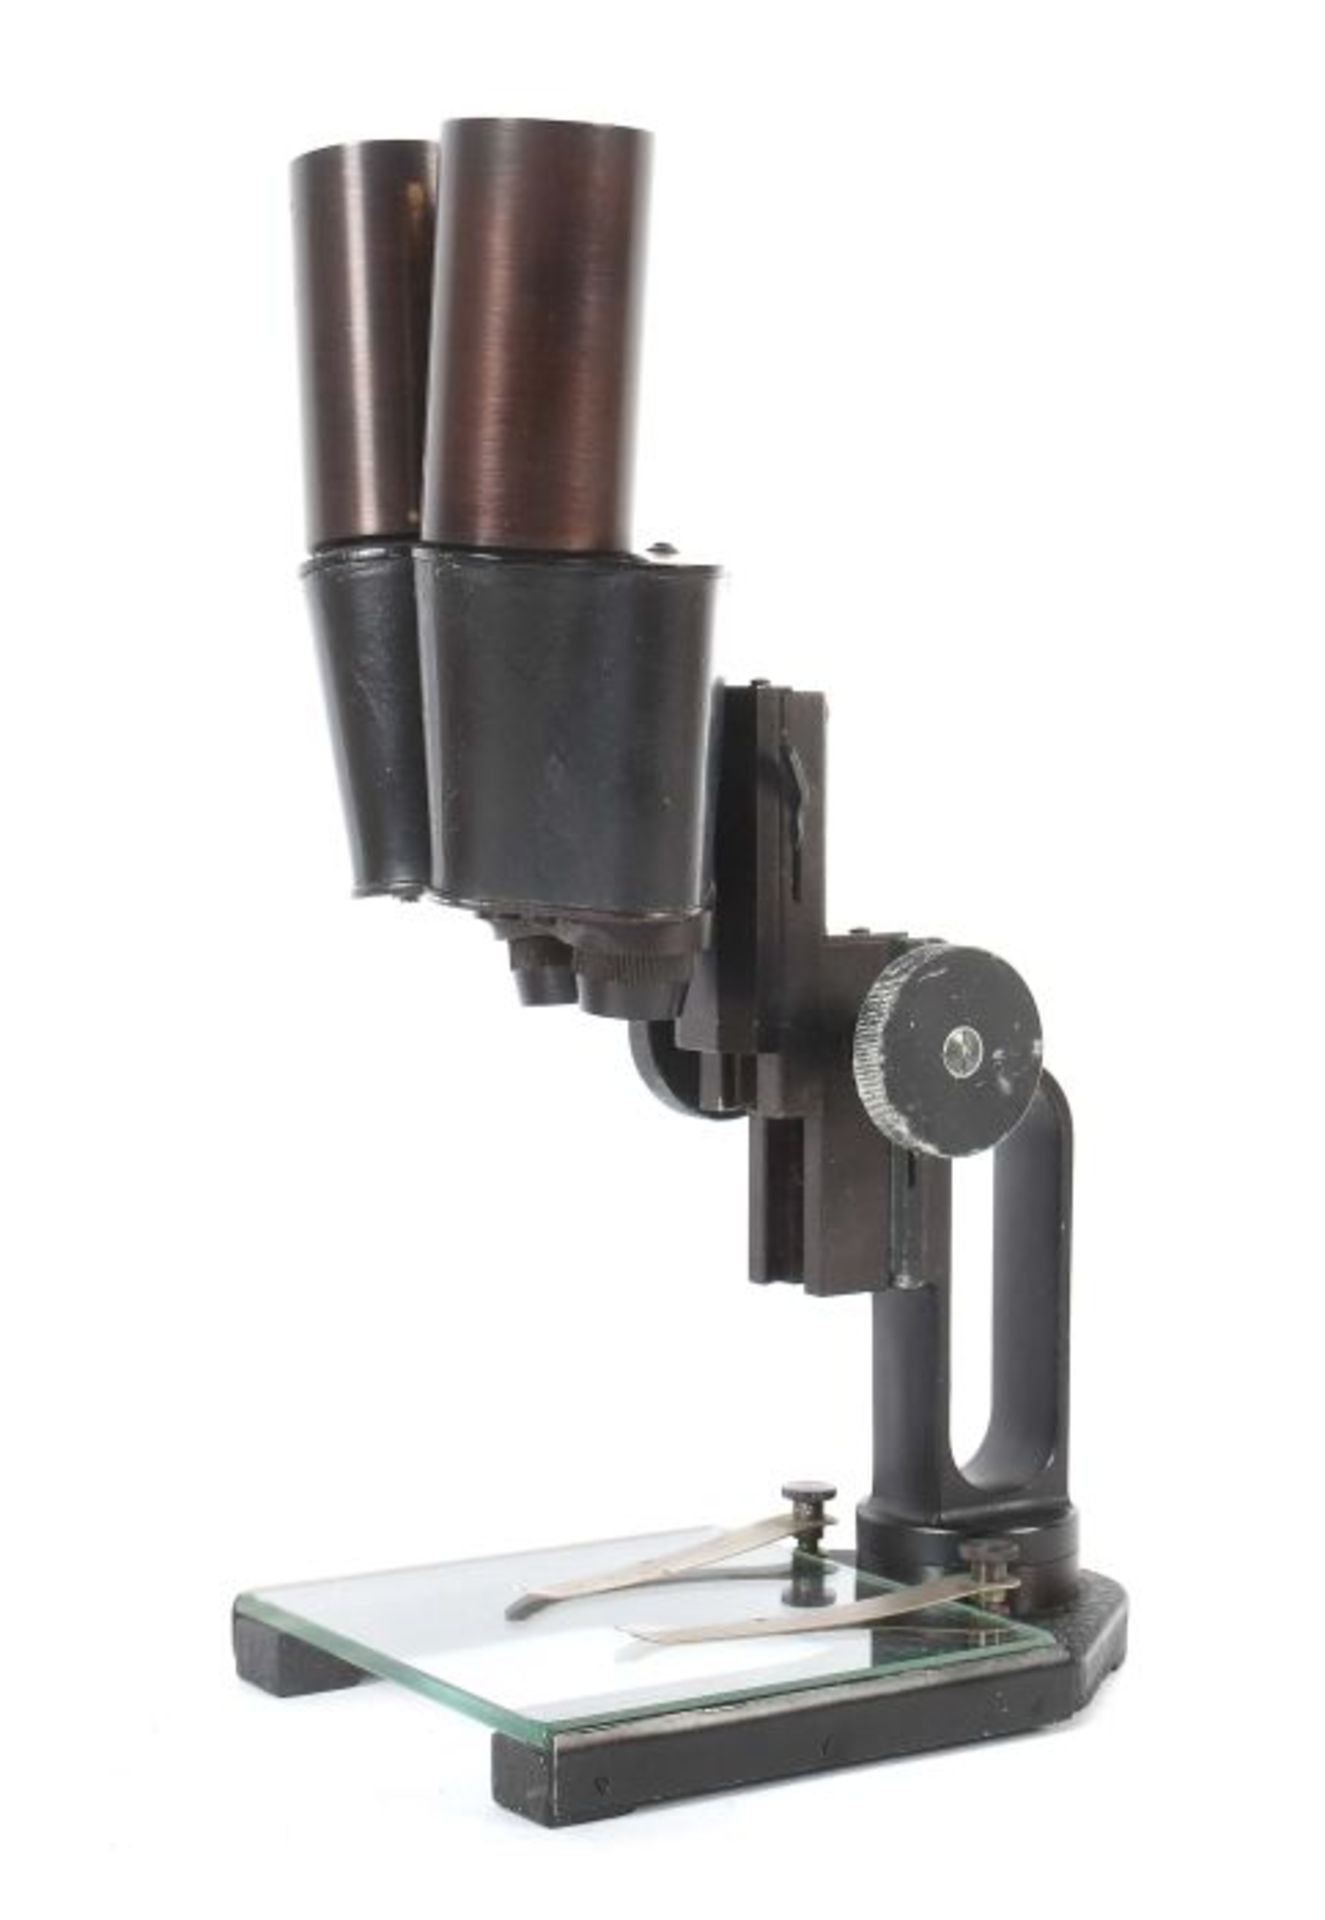 MikroskopE. Leitz, Wetzlar, um 1943, schwarz lackiertes Metallgestell bez. und num. 372452,